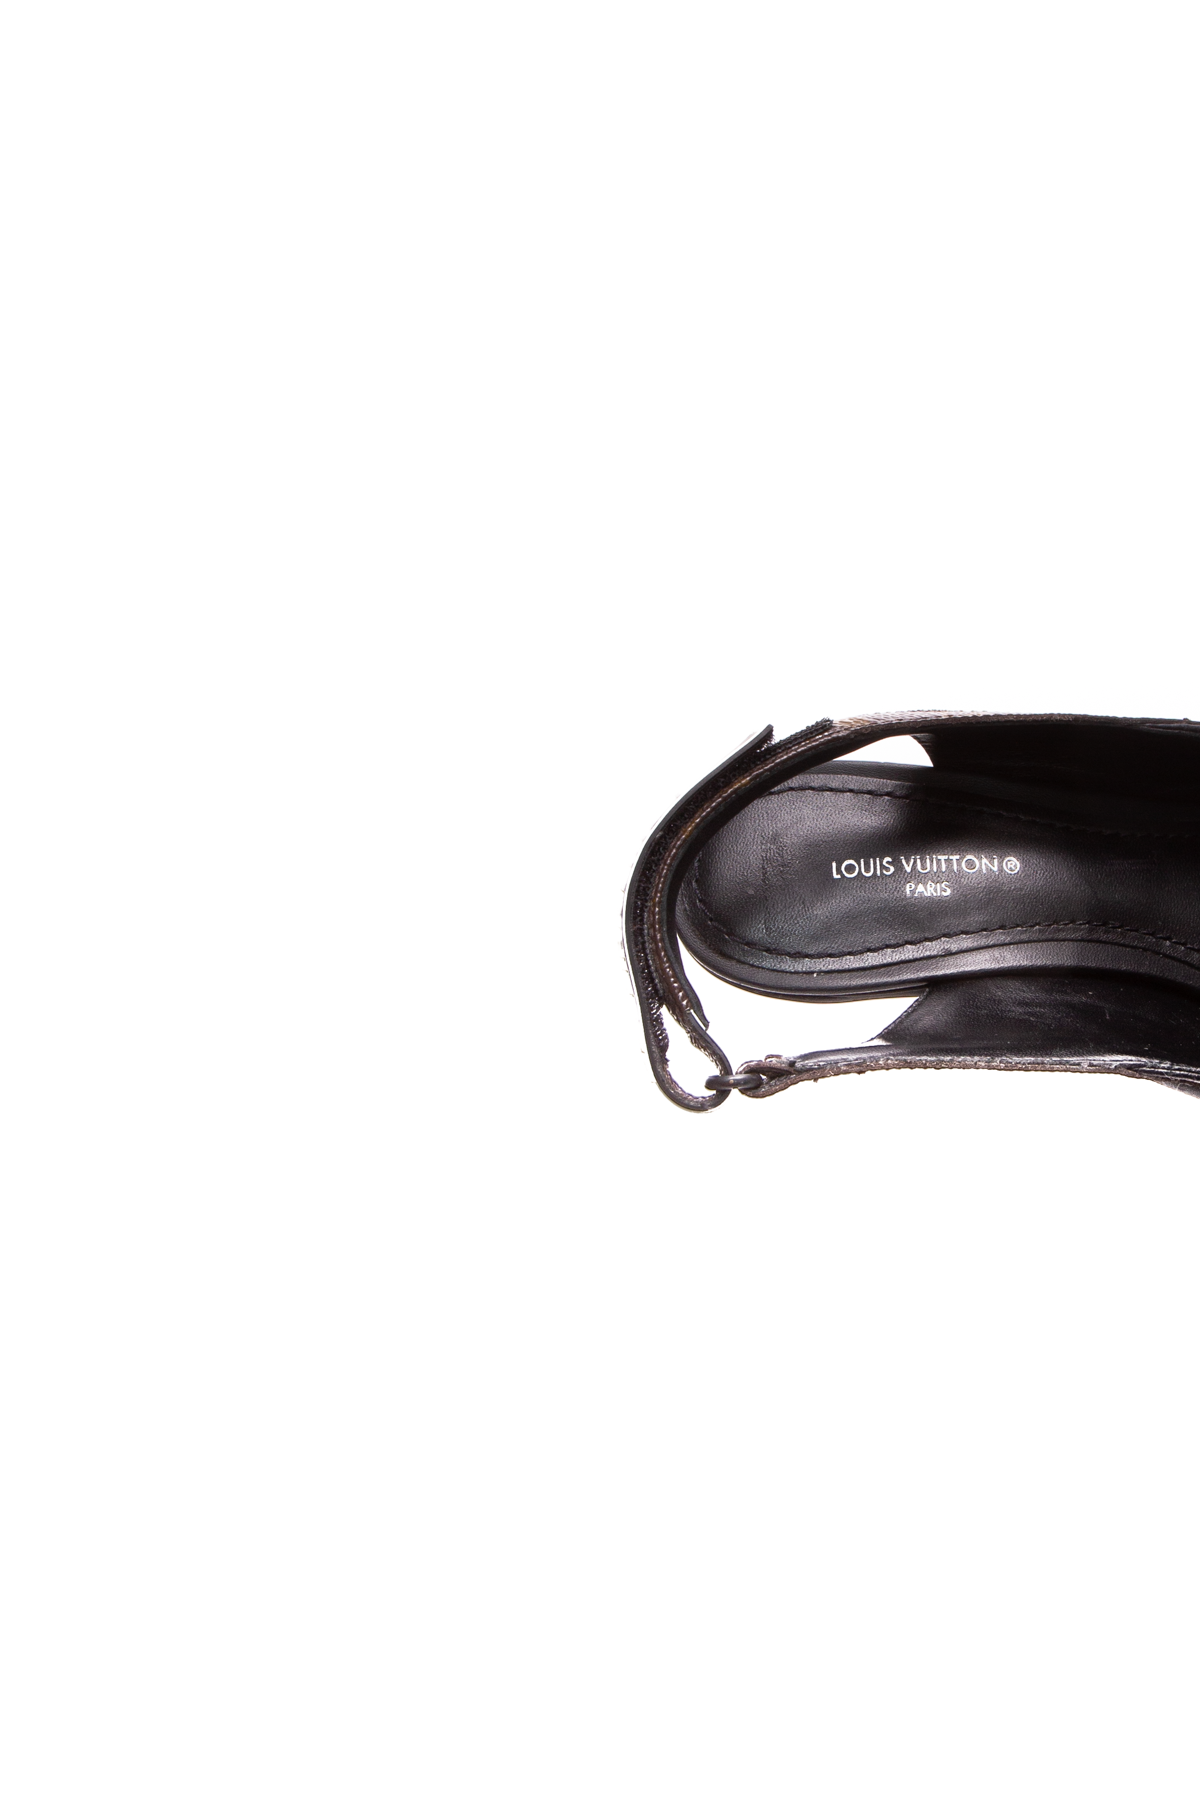 Louis Vuitton Archlight Pump BLACK. Size 39.5